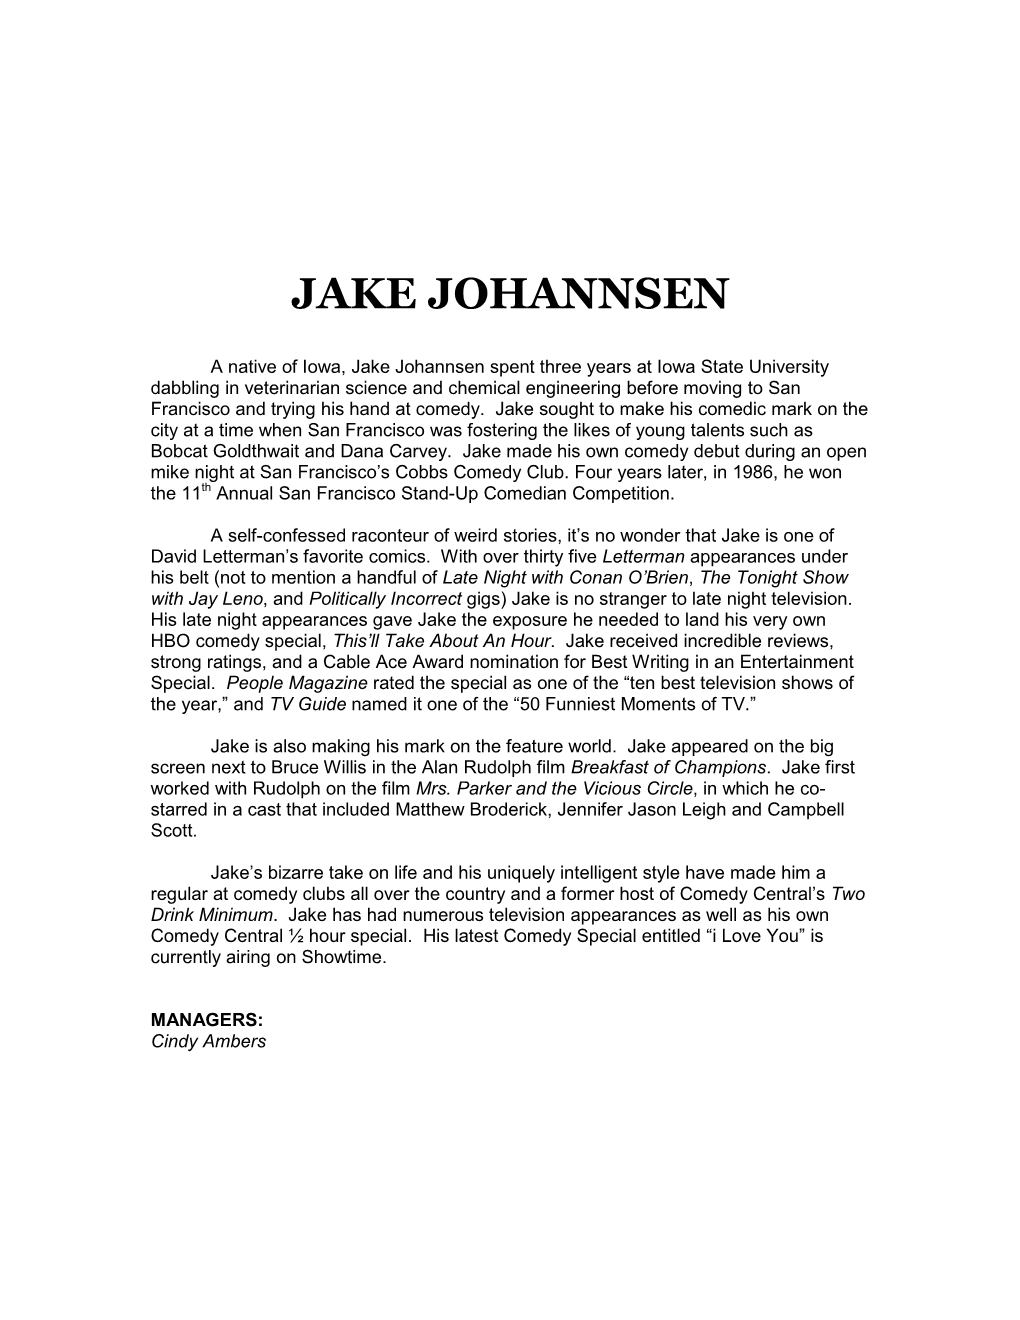 Jake Johannsen